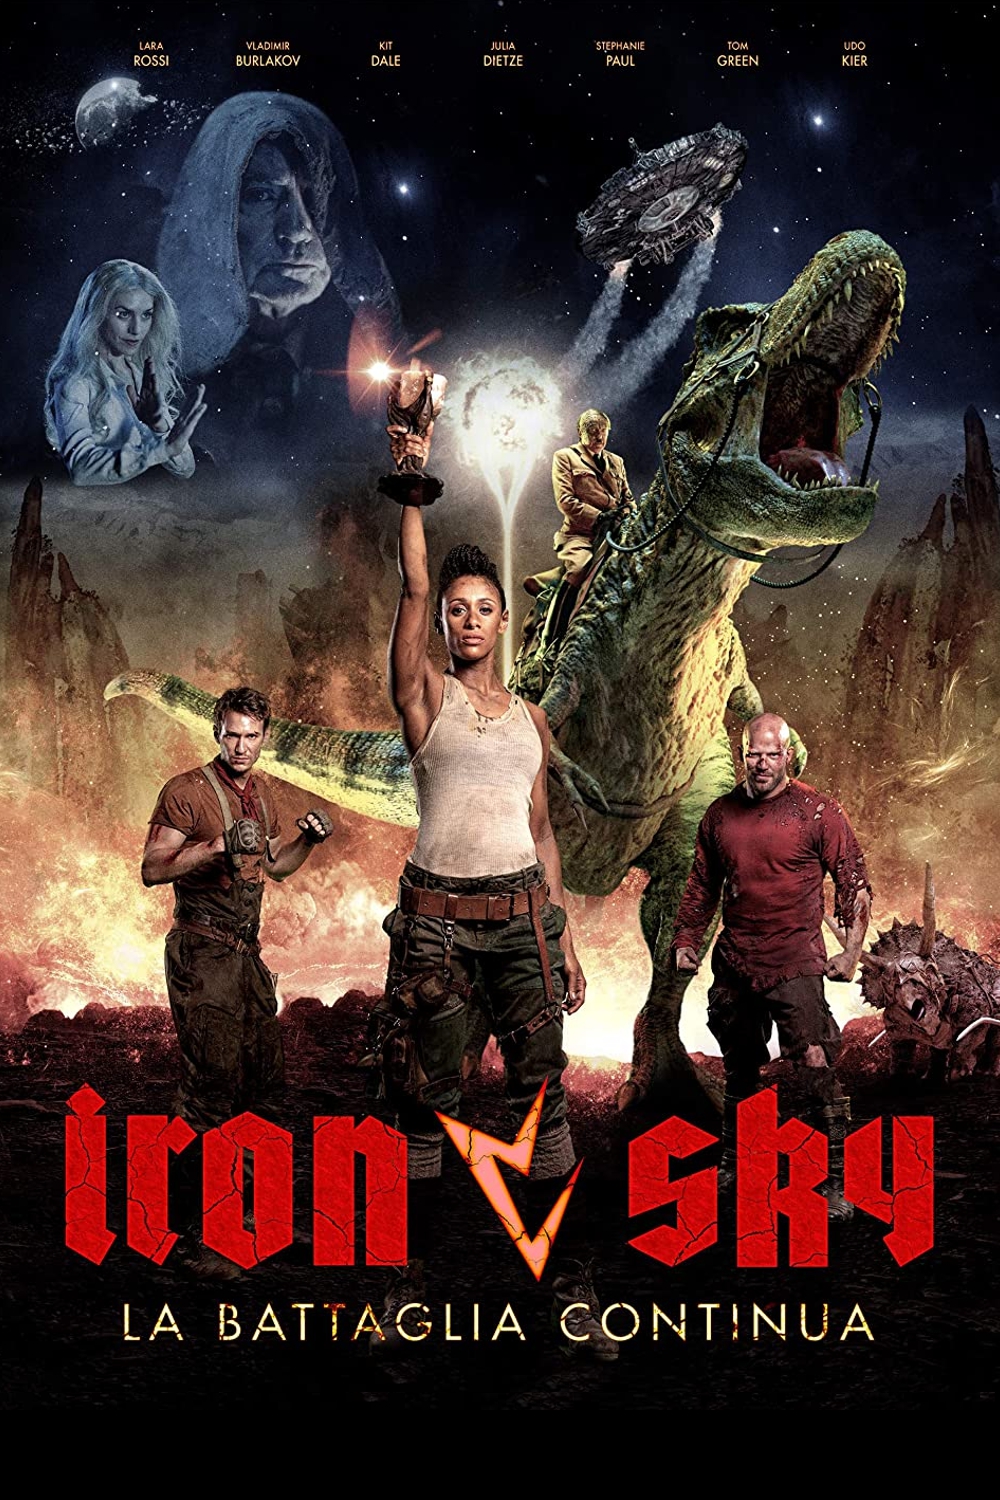 Iron Sky: La battaglia continua [HD] (2019)